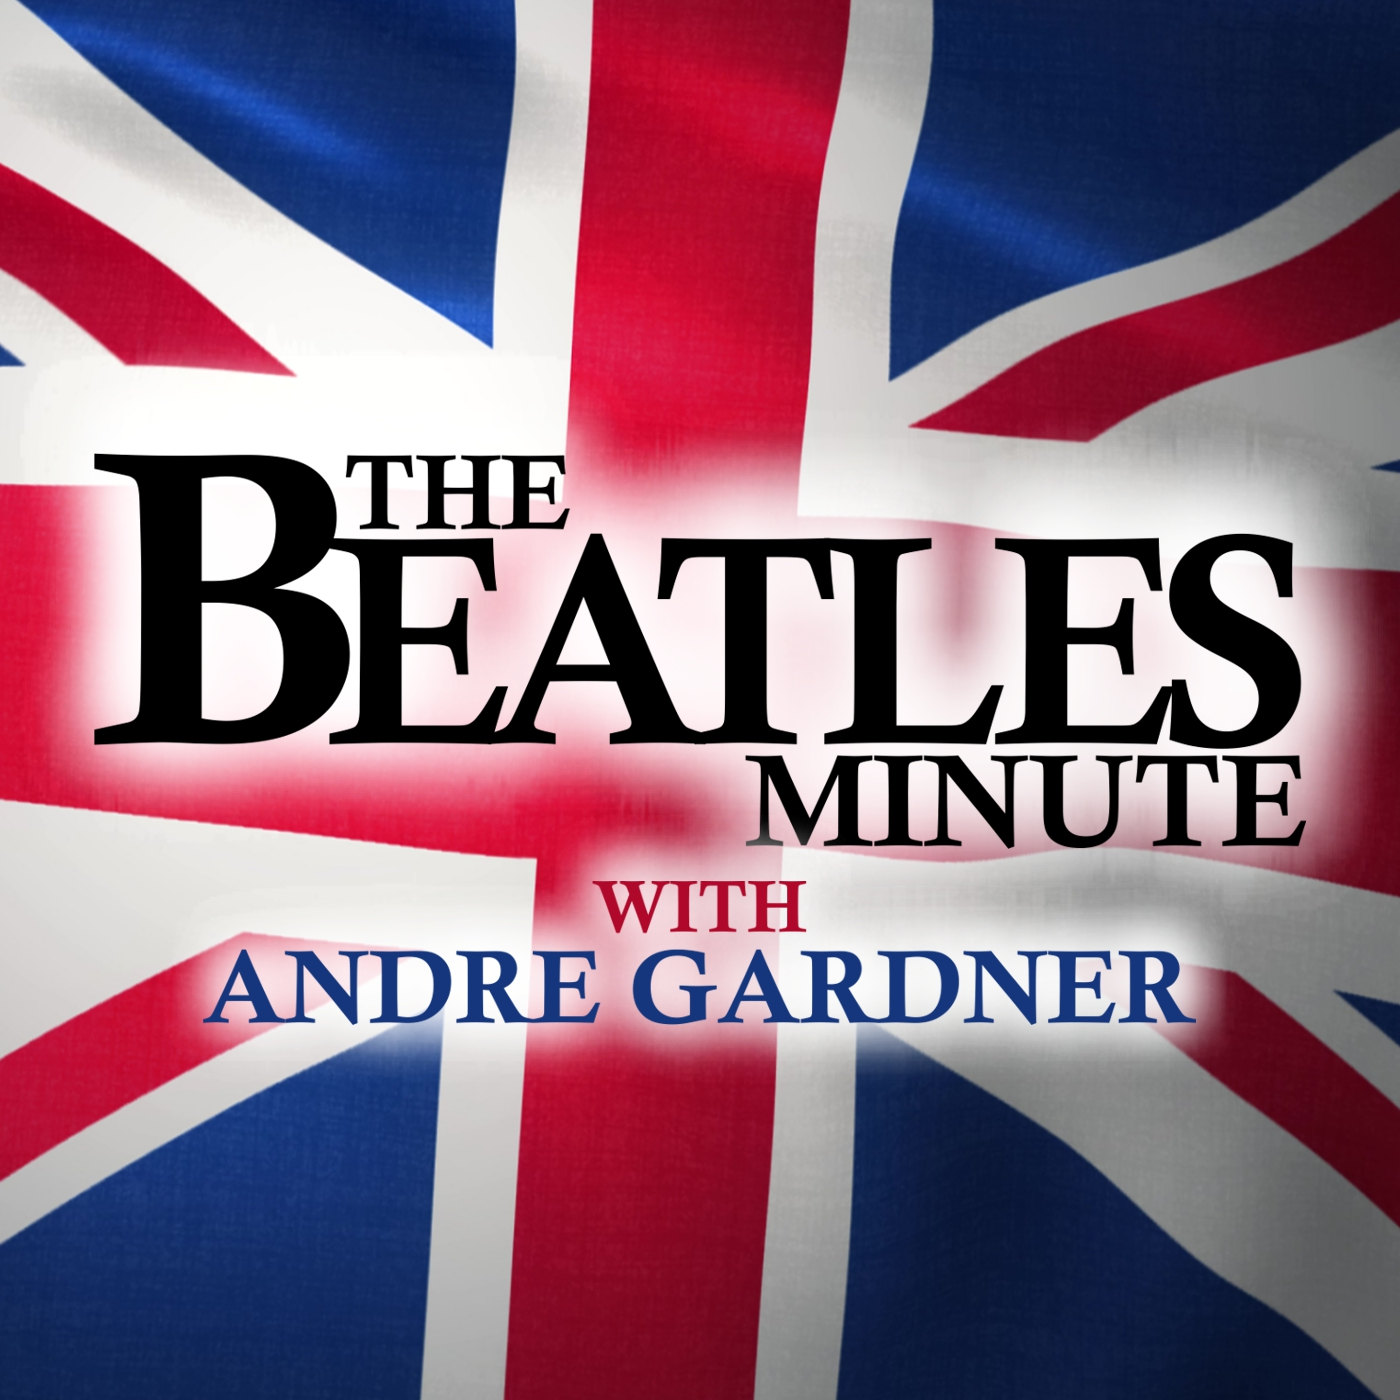 Beatles Minute - week of June 7, 2021